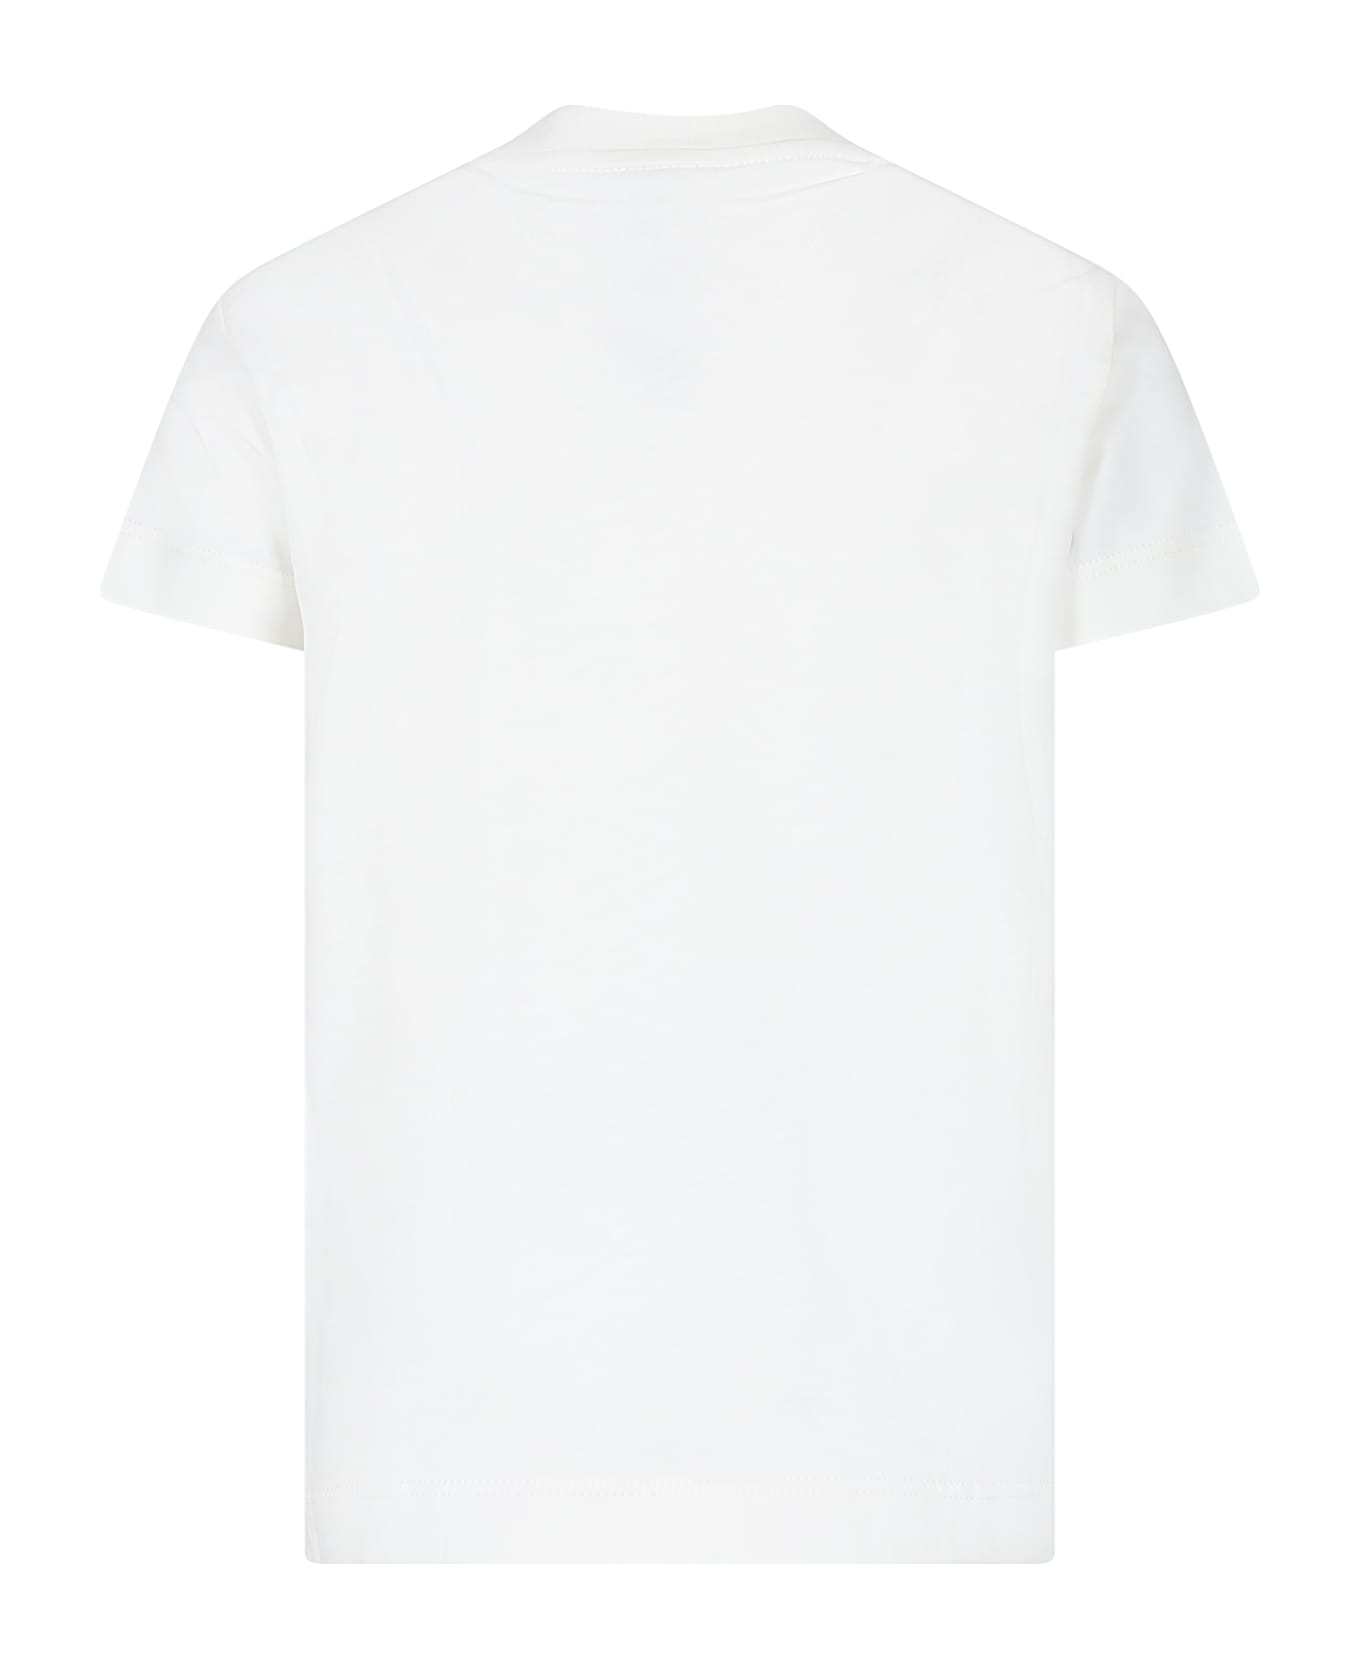 Fendi White T-shirt For Kids With Fendi Logo - White